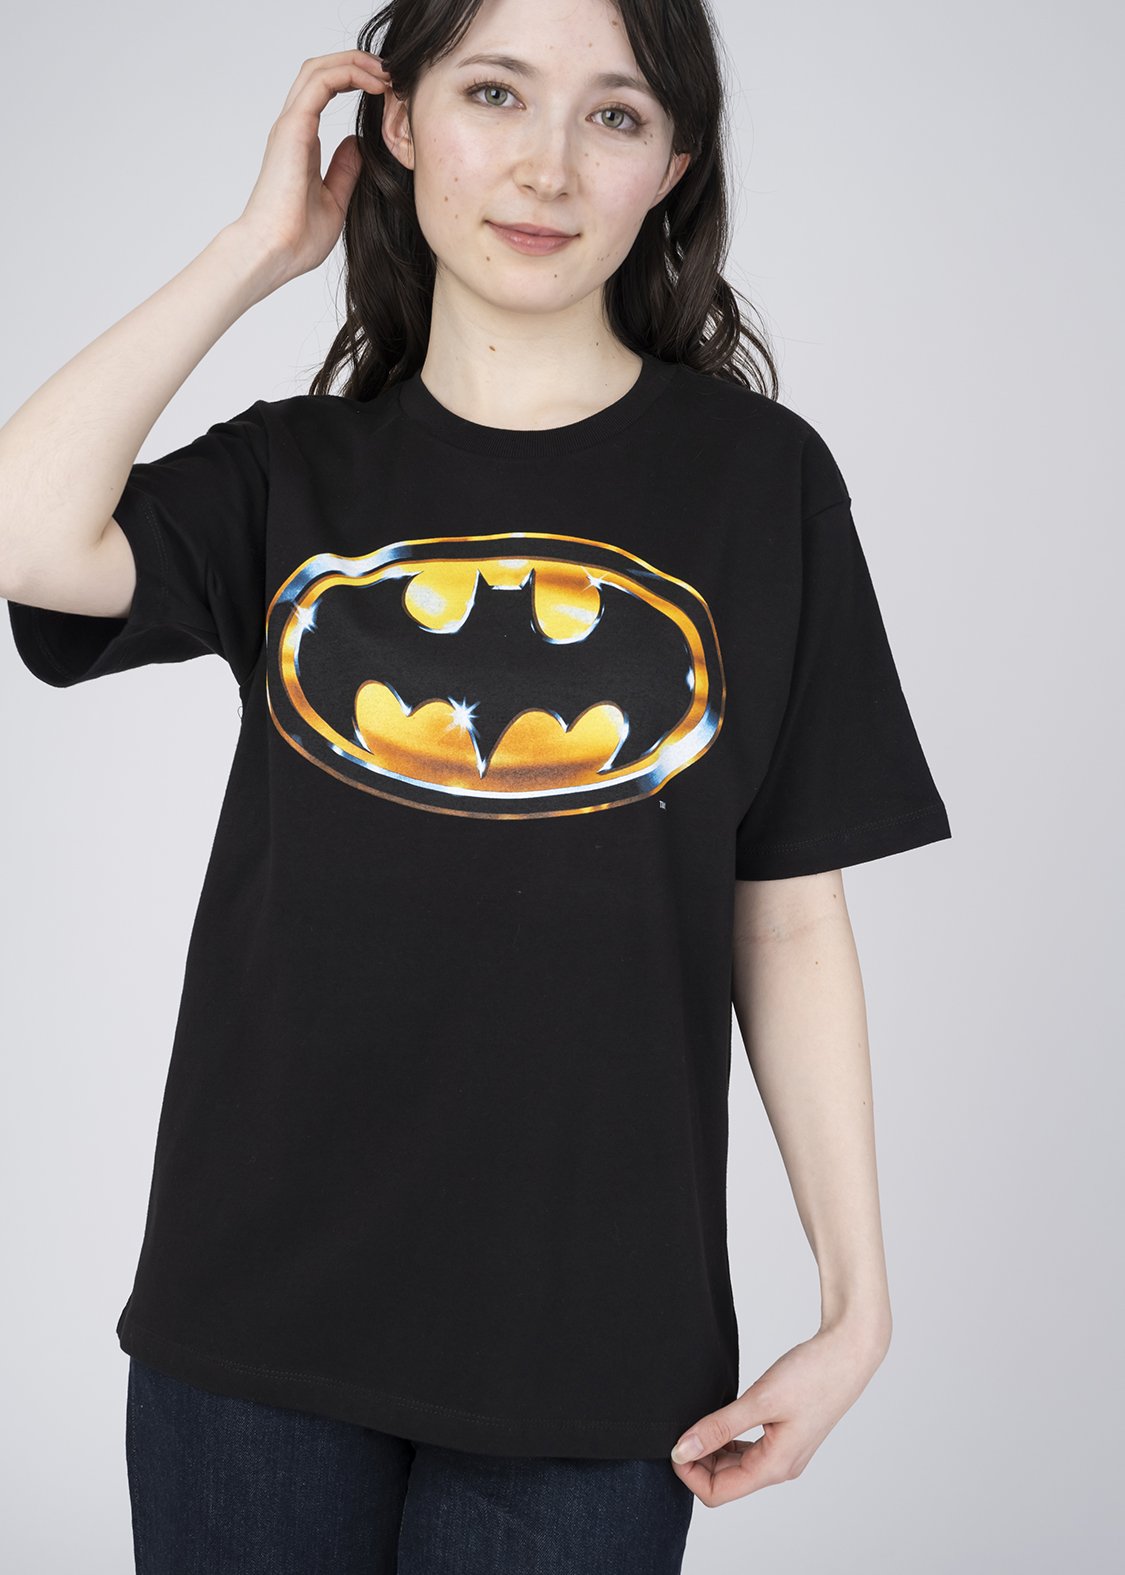 グラニフ「バットマン」 Tシャツ「バットマン」